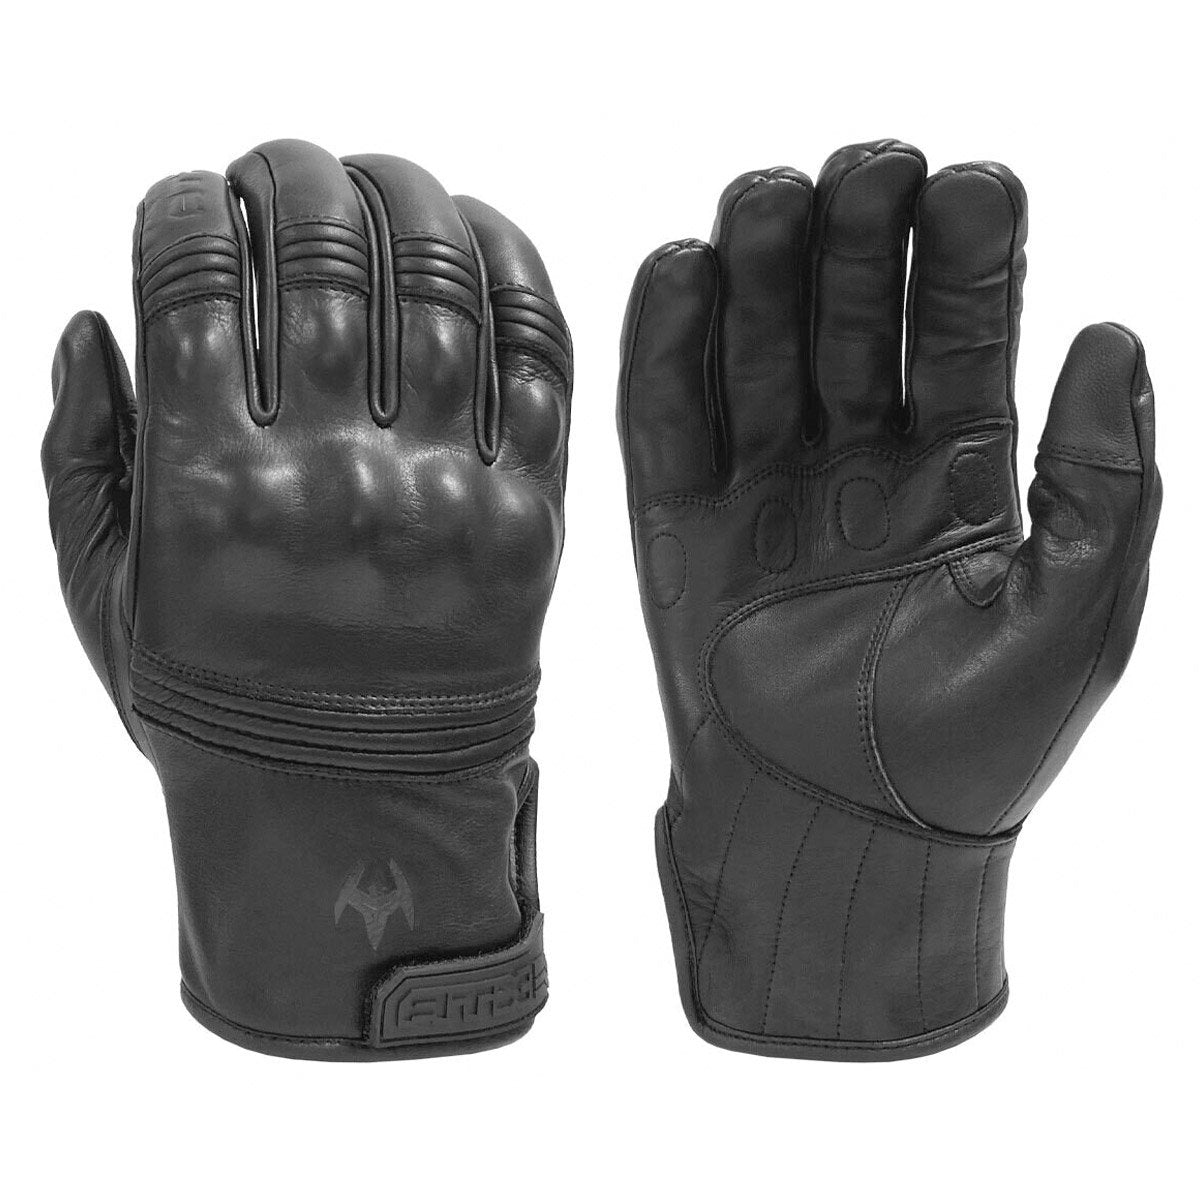 Damascus ATX96 Lightweight Patrol Gloves | Tactial Gear Australia Tactical Gear